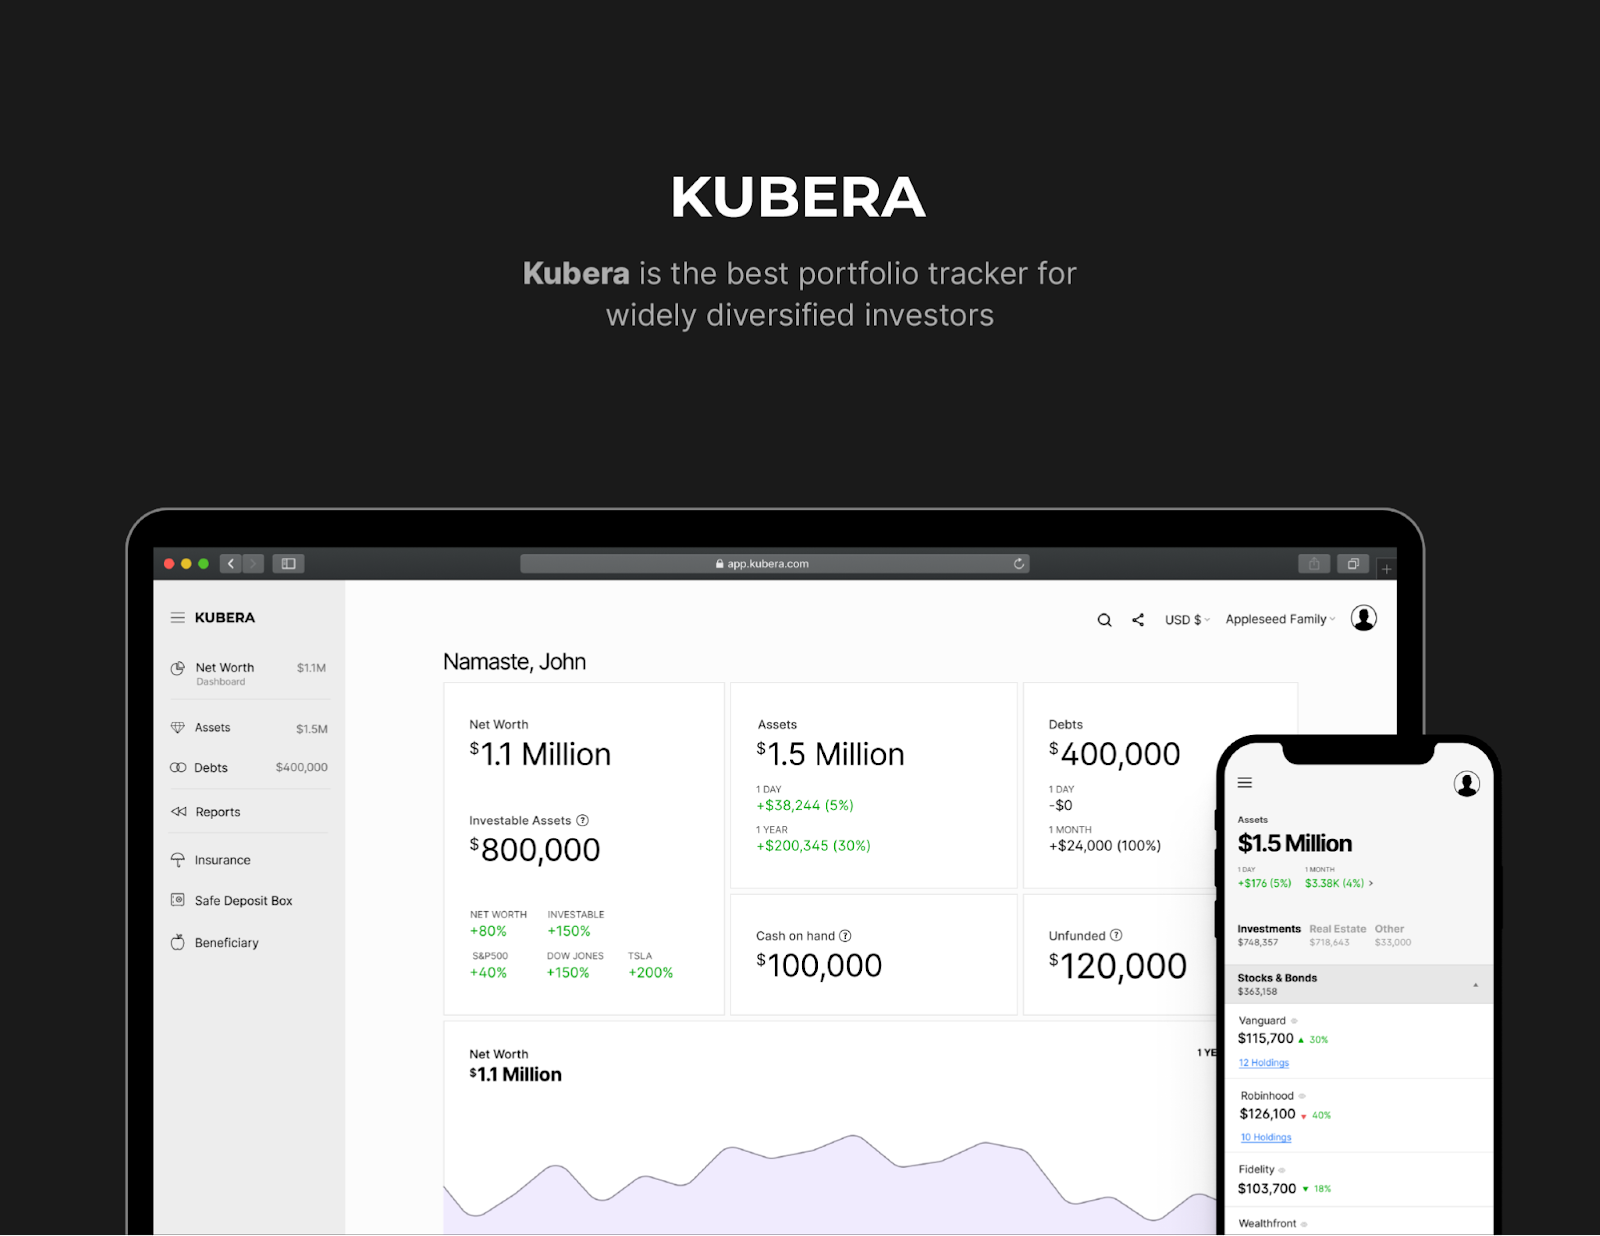 Kubera Wealth Tracker